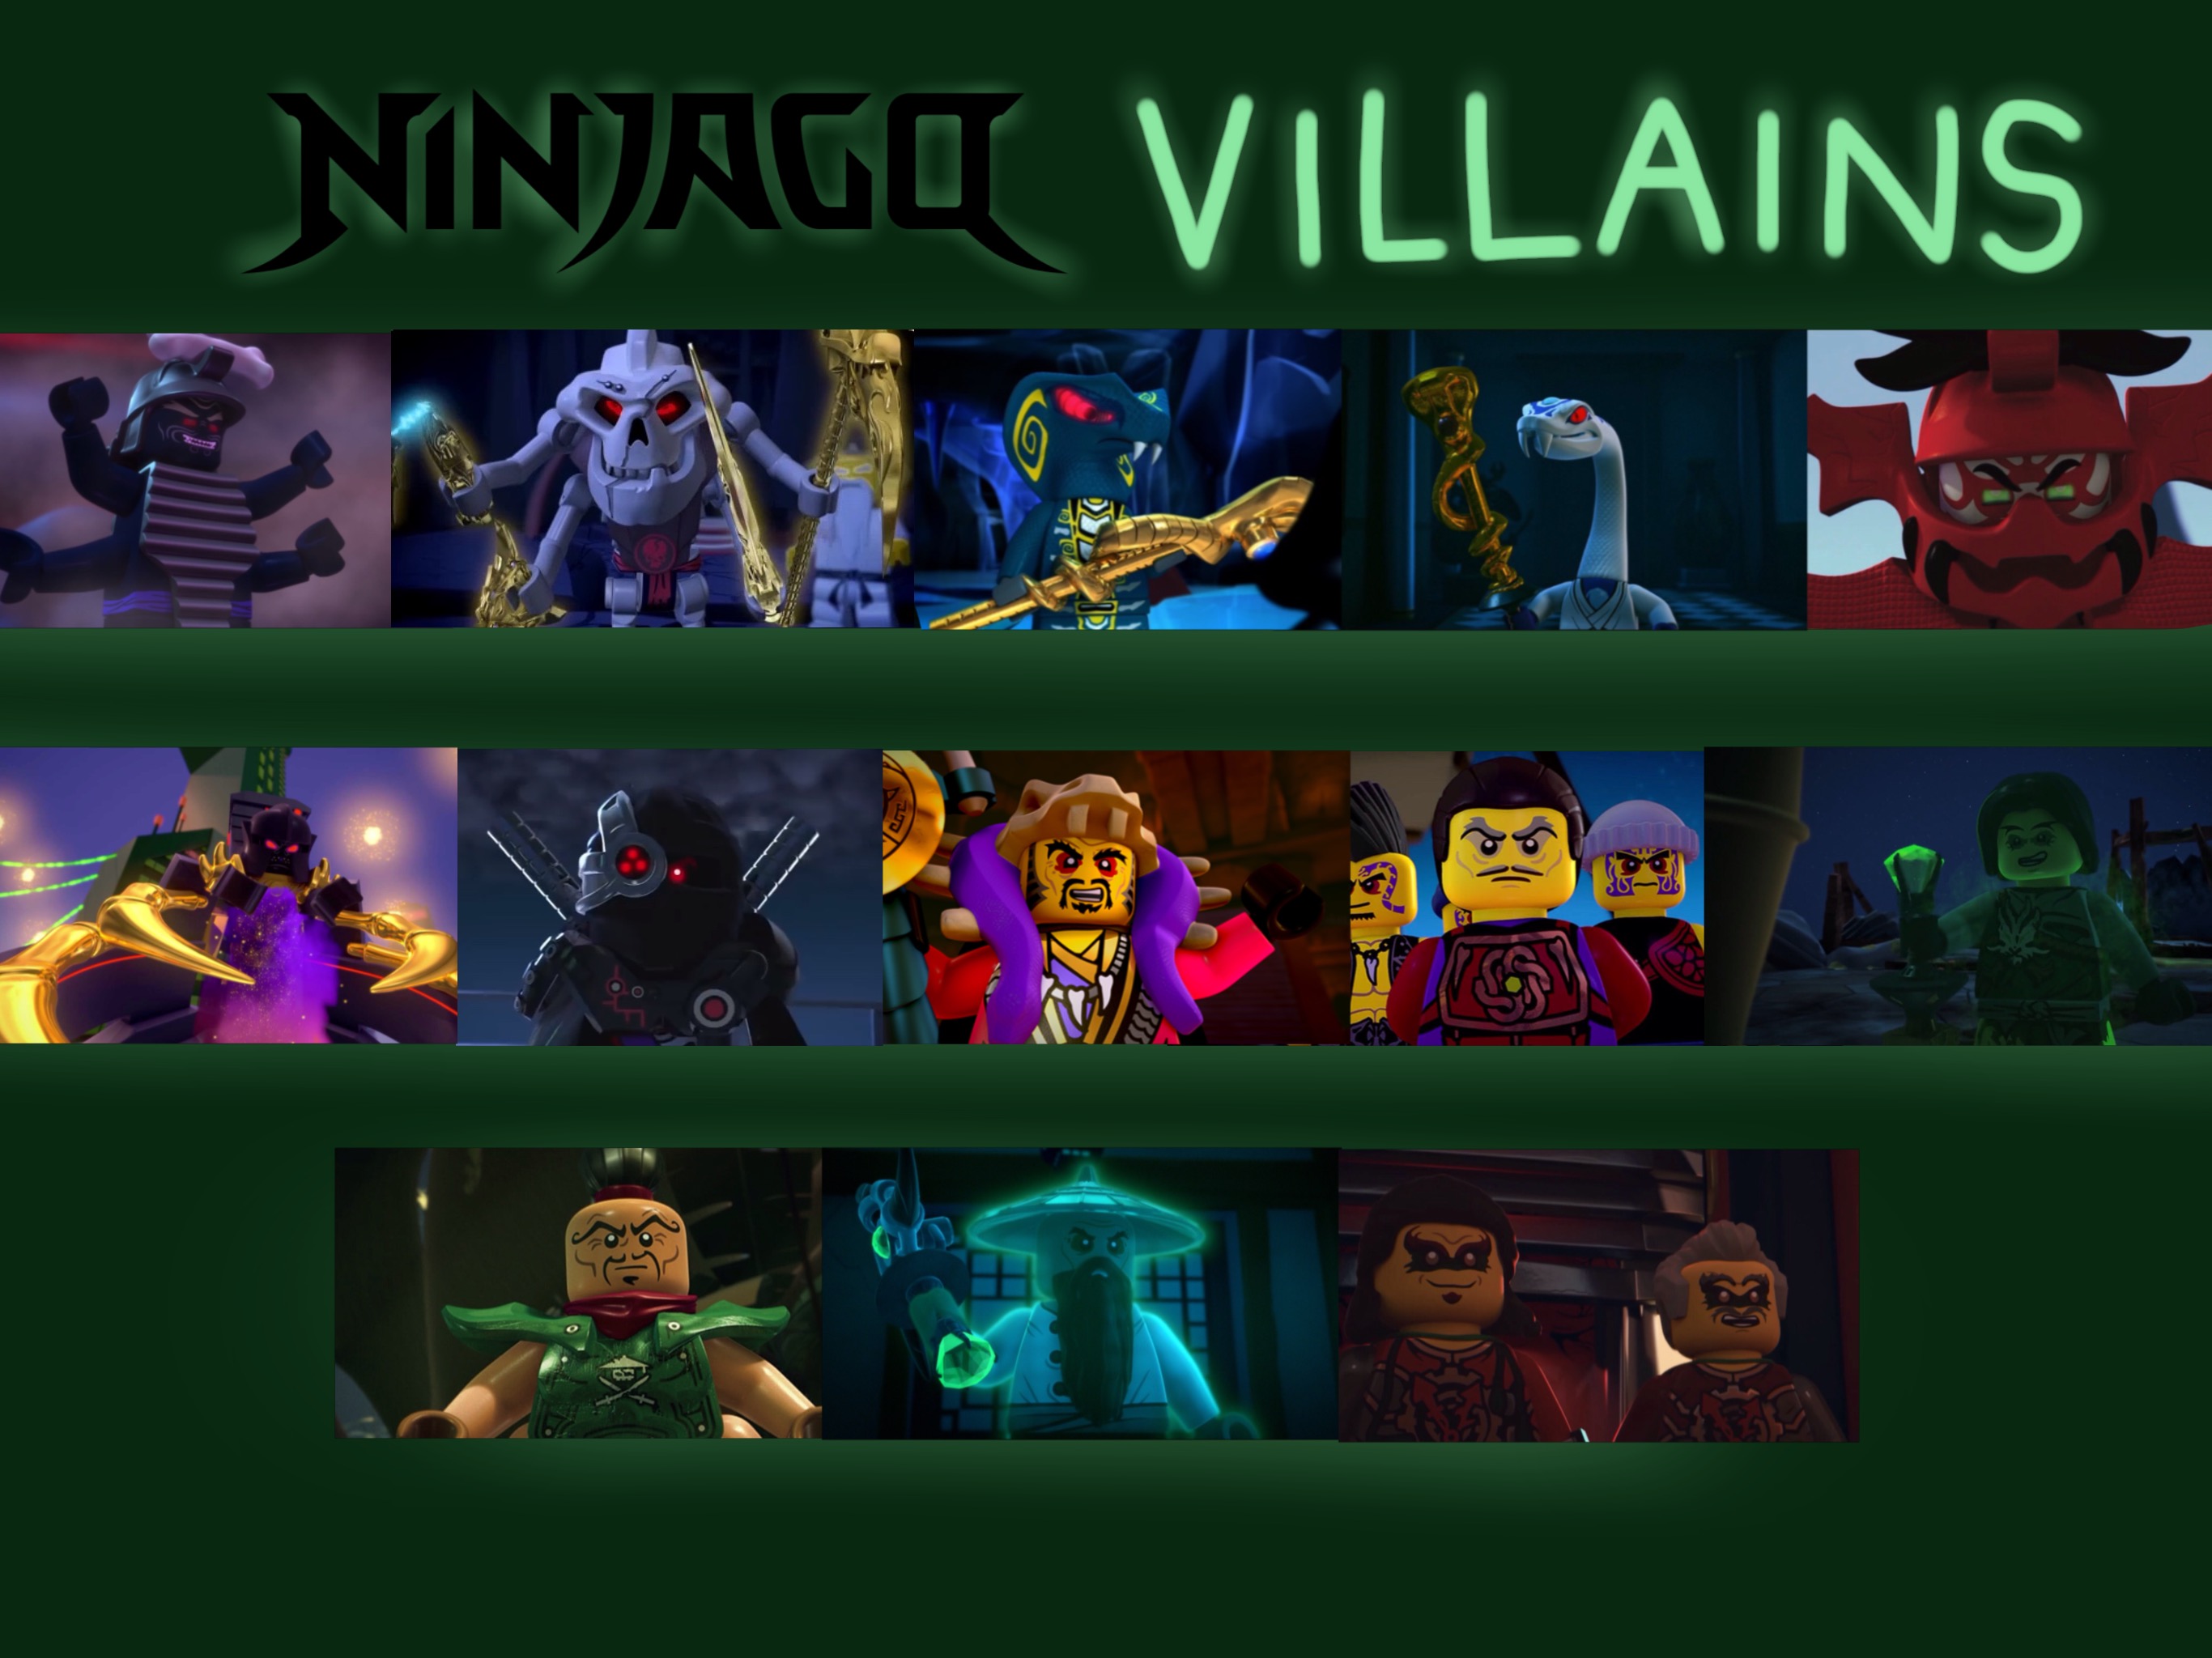 Ninjago Villains by JustSomePainter11 on DeviantArt